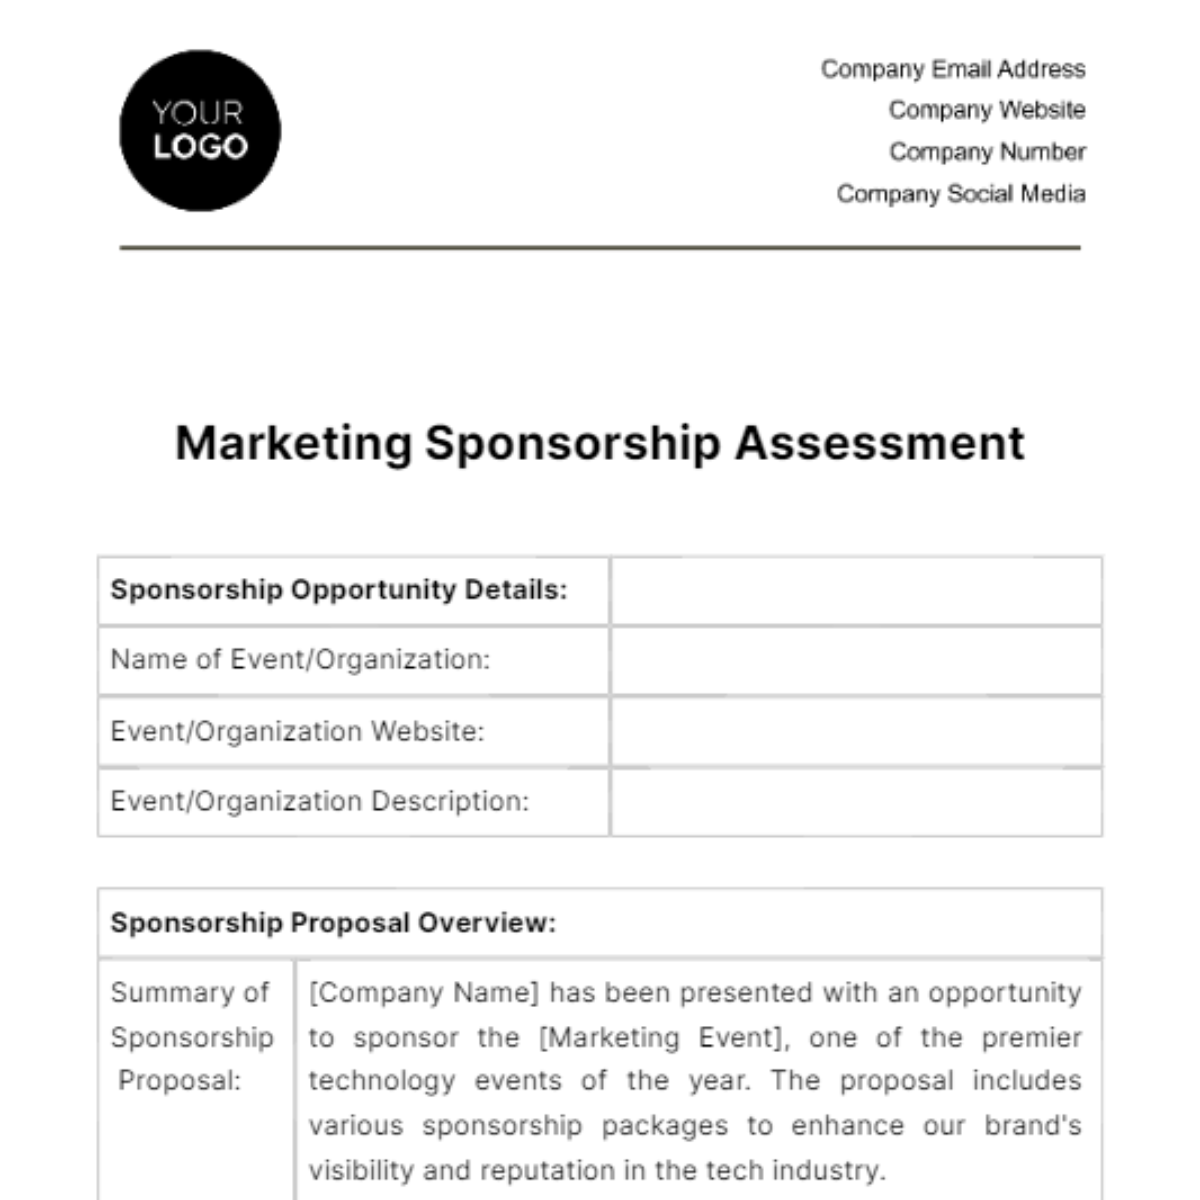 Marketing Sponsorship Assessment Template